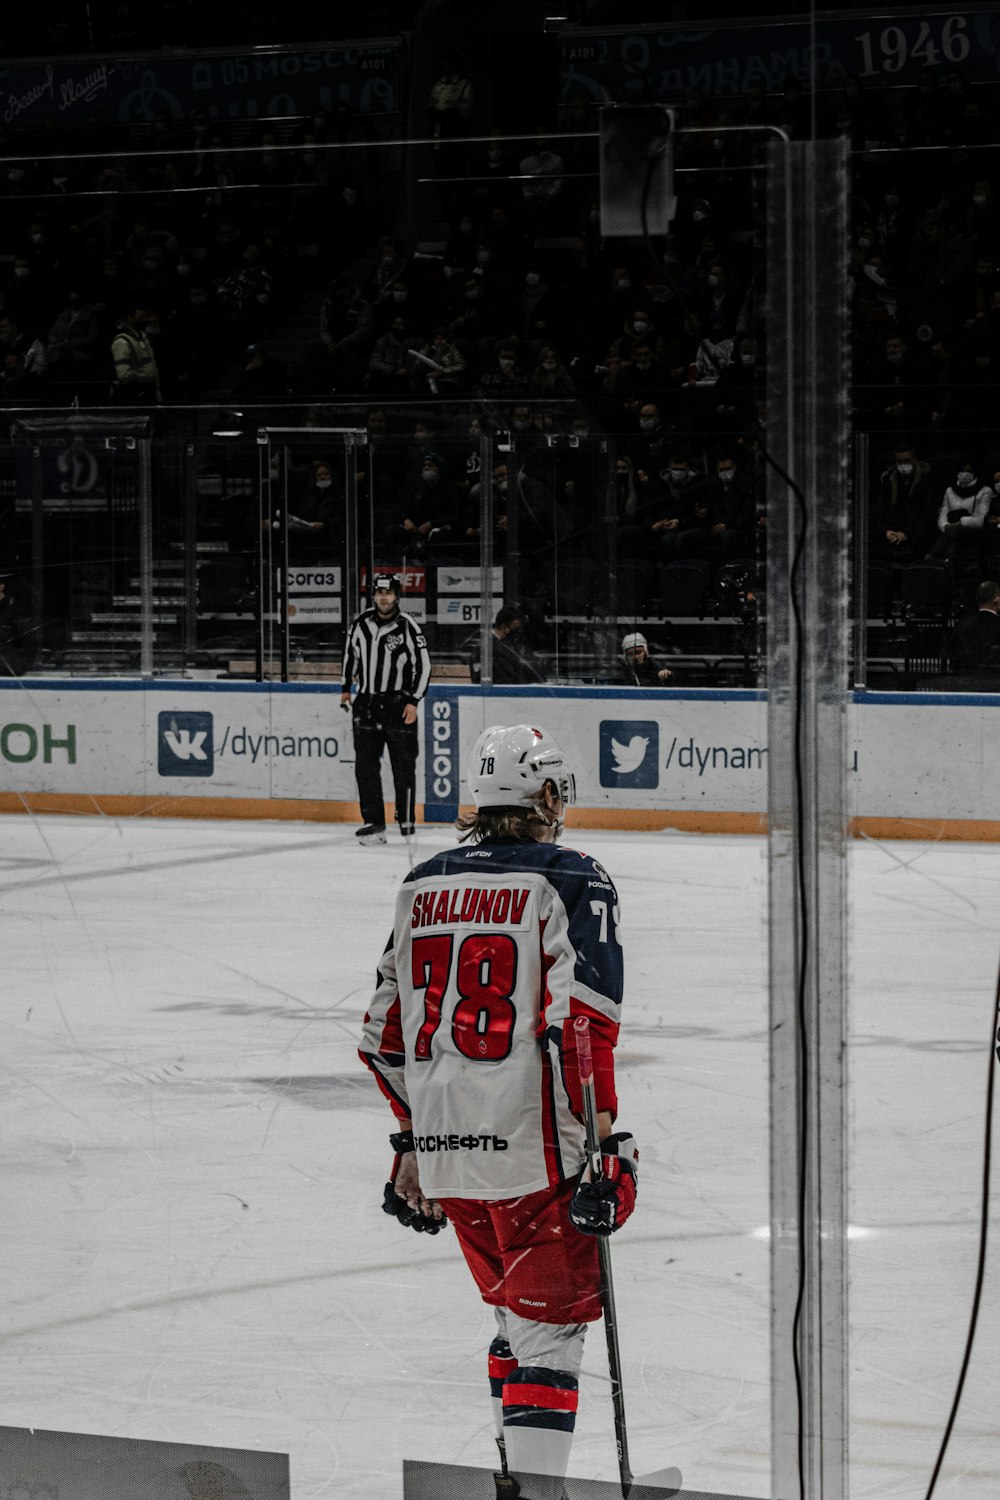 Un jugador de hockey está parado en el hielo